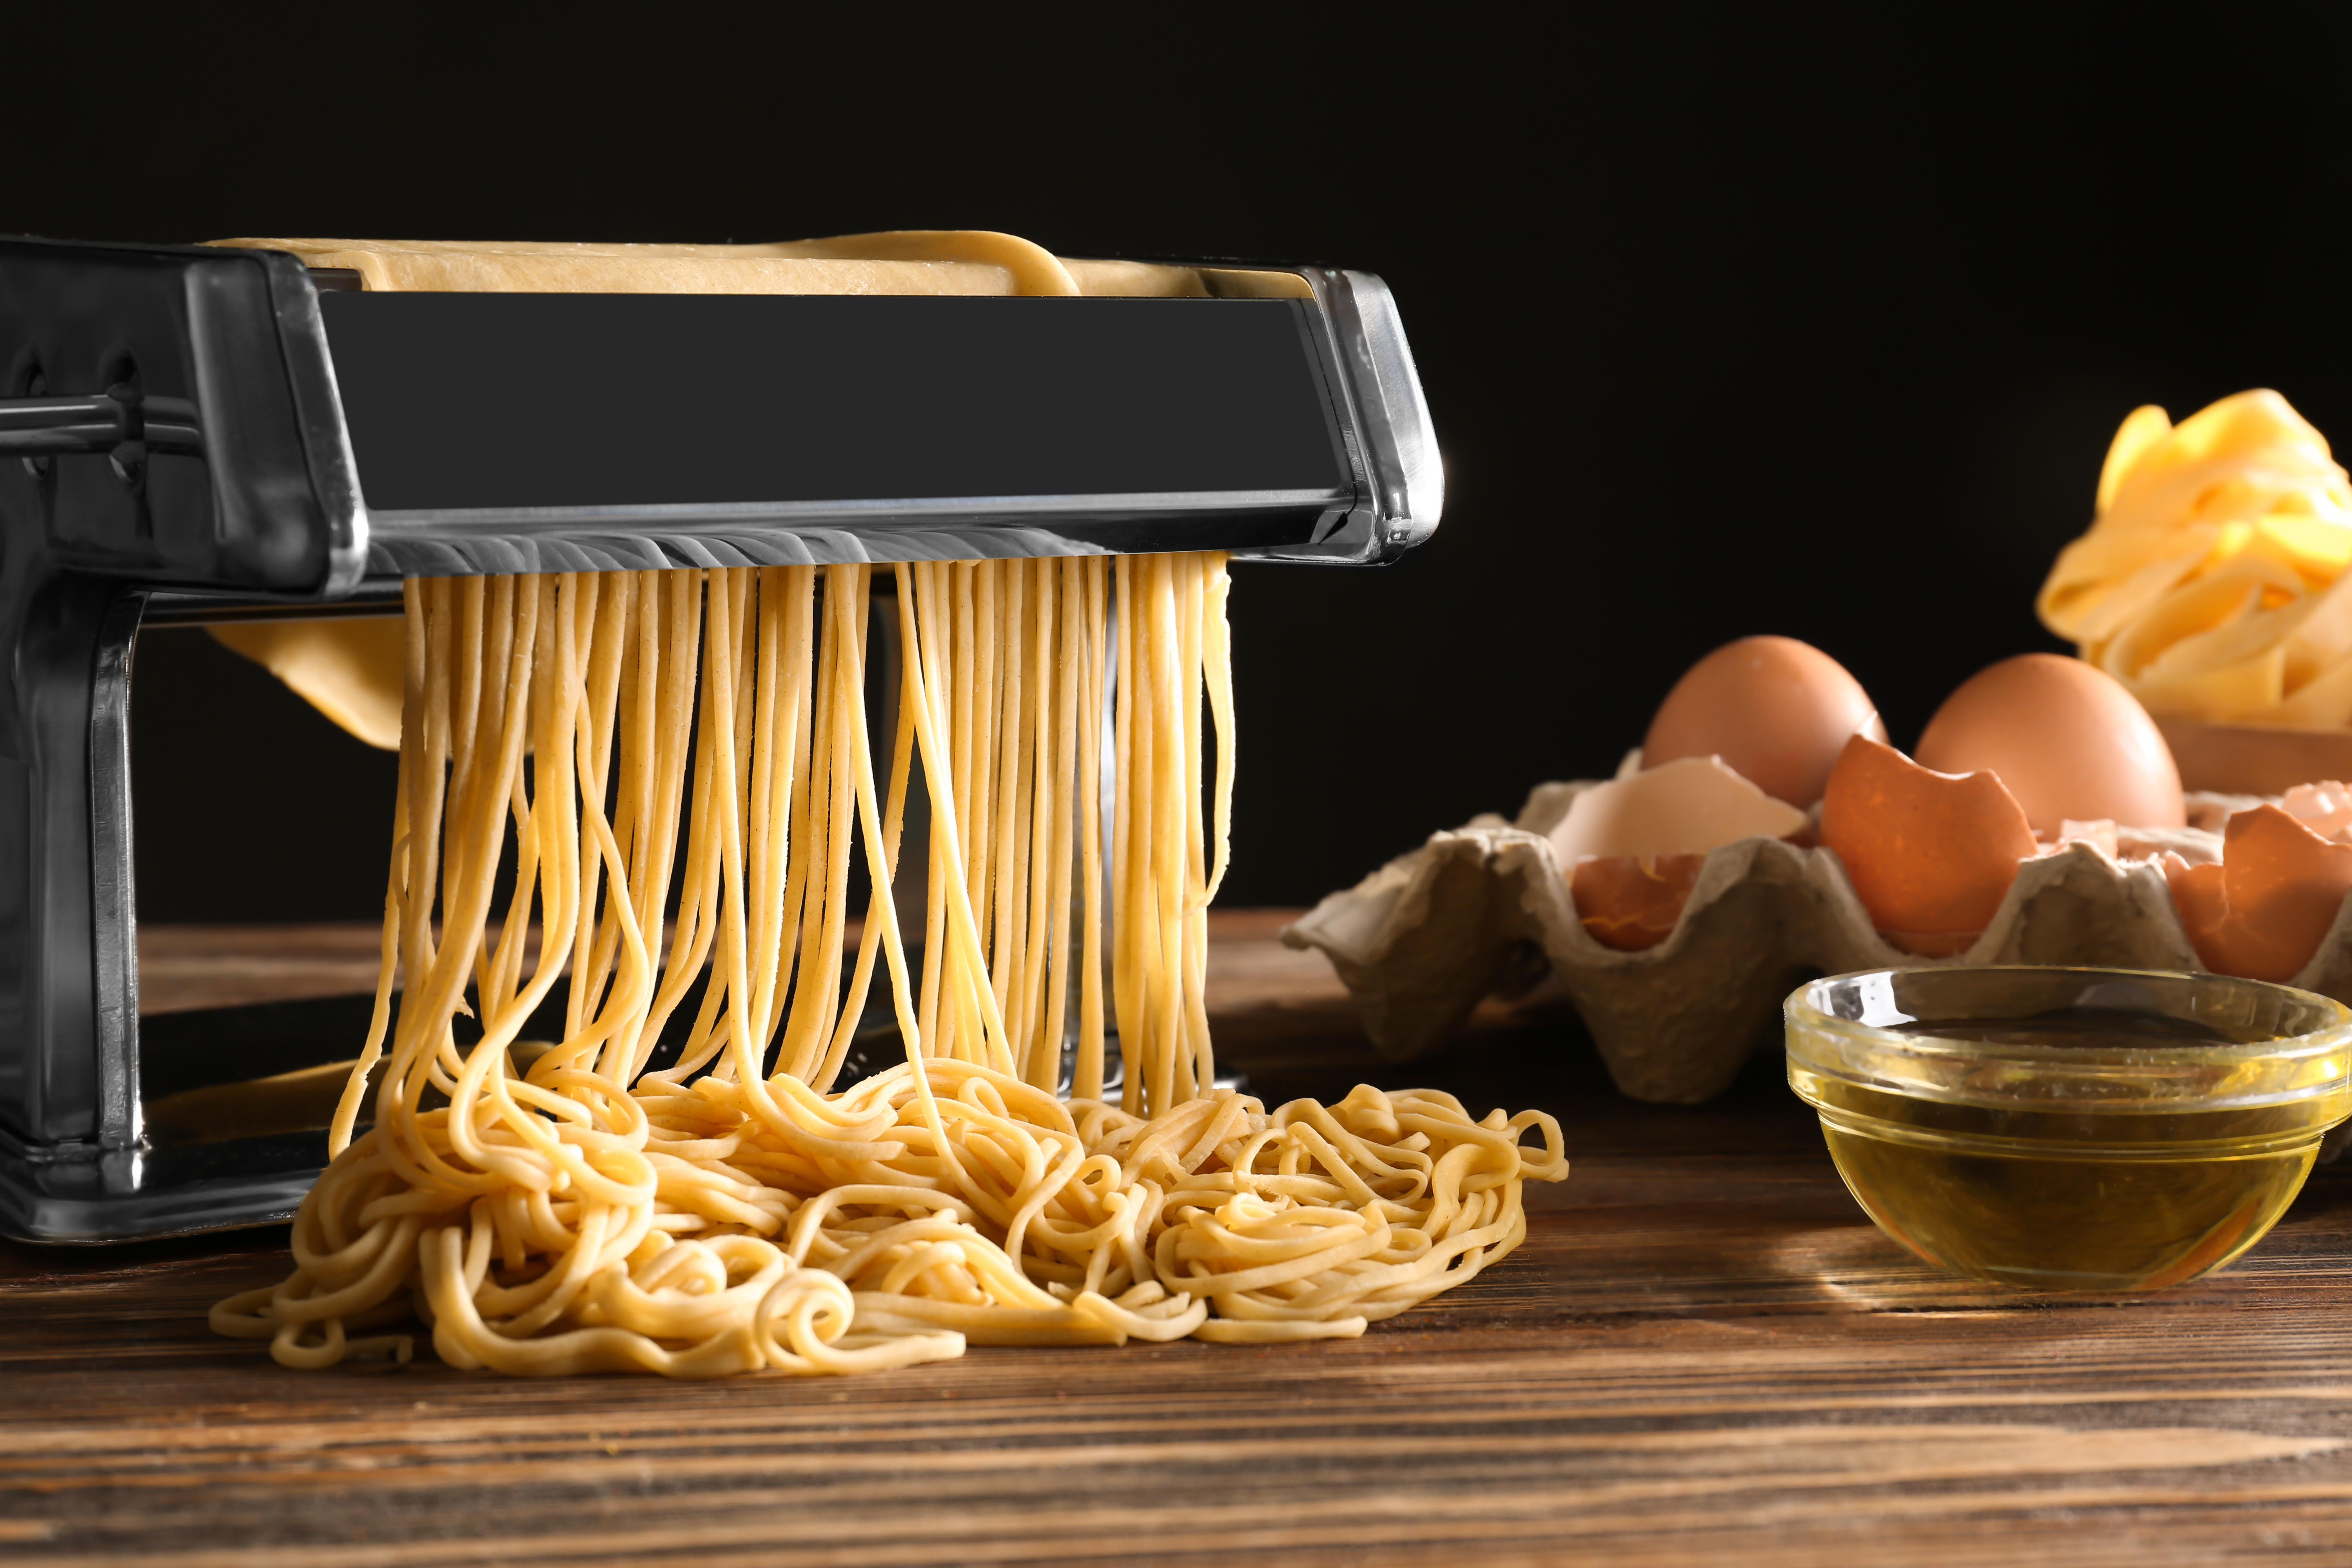 Pasta Maker Deluxe Set by Cucina Pro -Includes Spaghetti Fettucini Angel Hair Ravioli Lasagnette Attachments